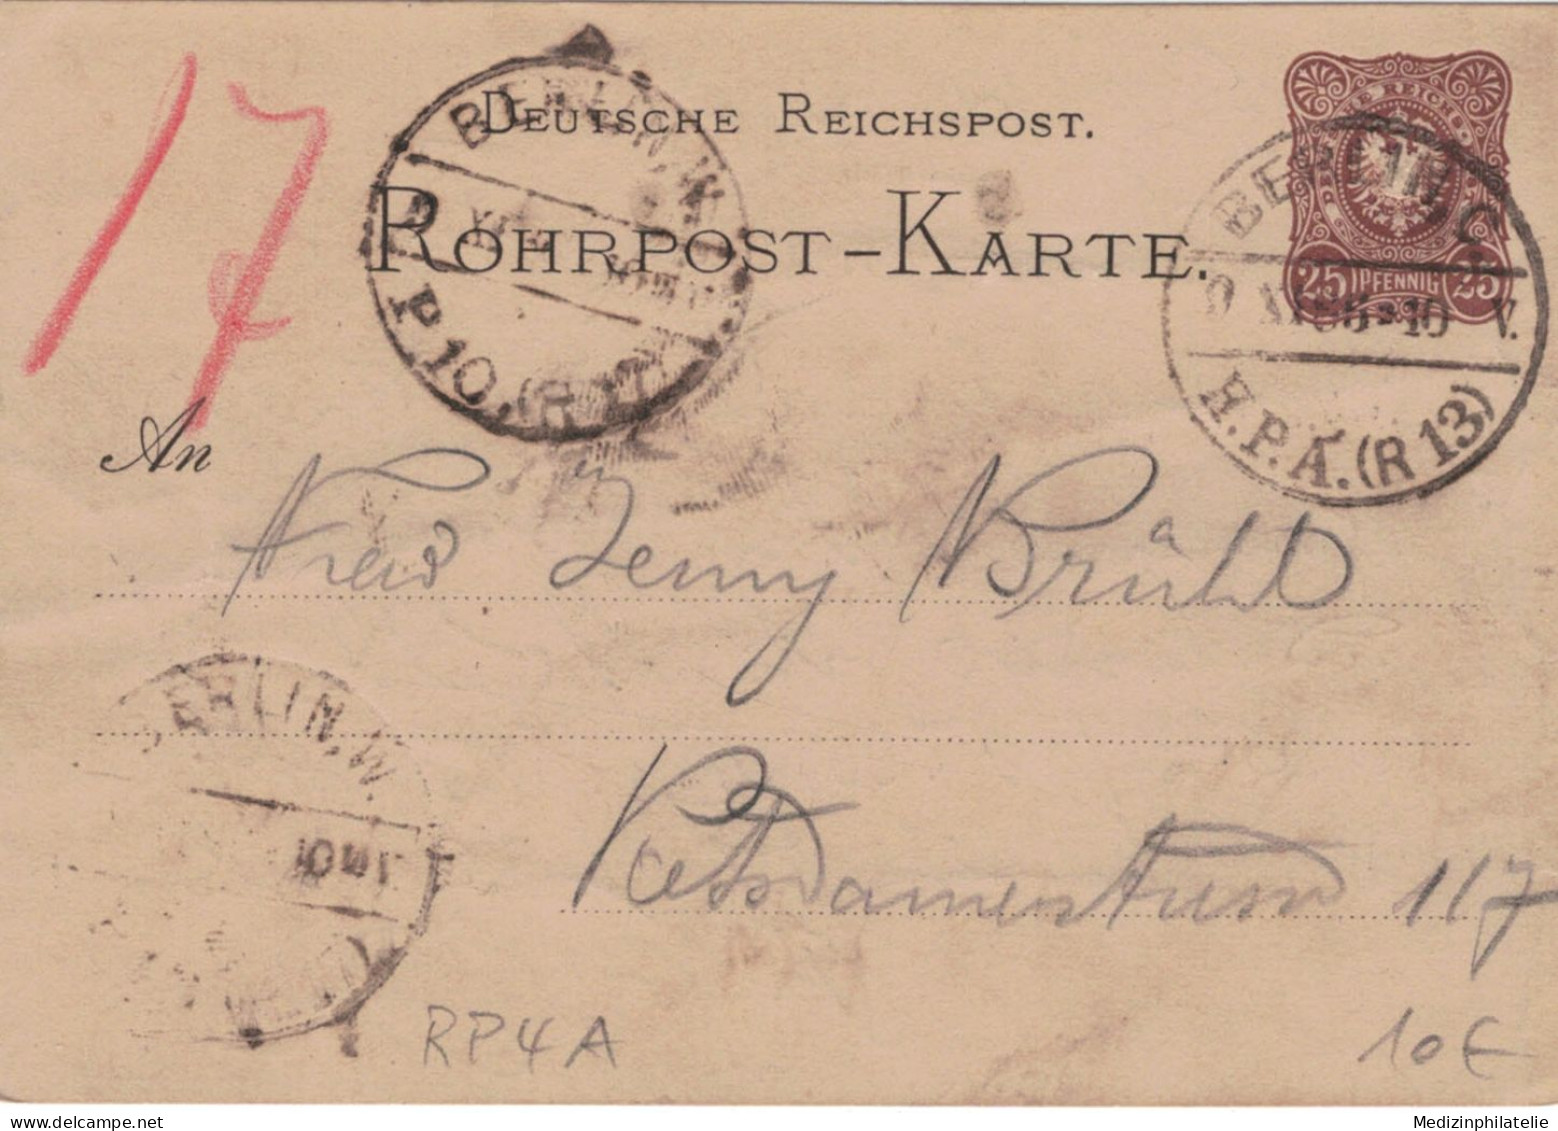 Rohrpost-Karte 25 Pf. Adler In Ellipse - 4 A - Berlin H.P.A. 1886 13 > 17 - Cartoline